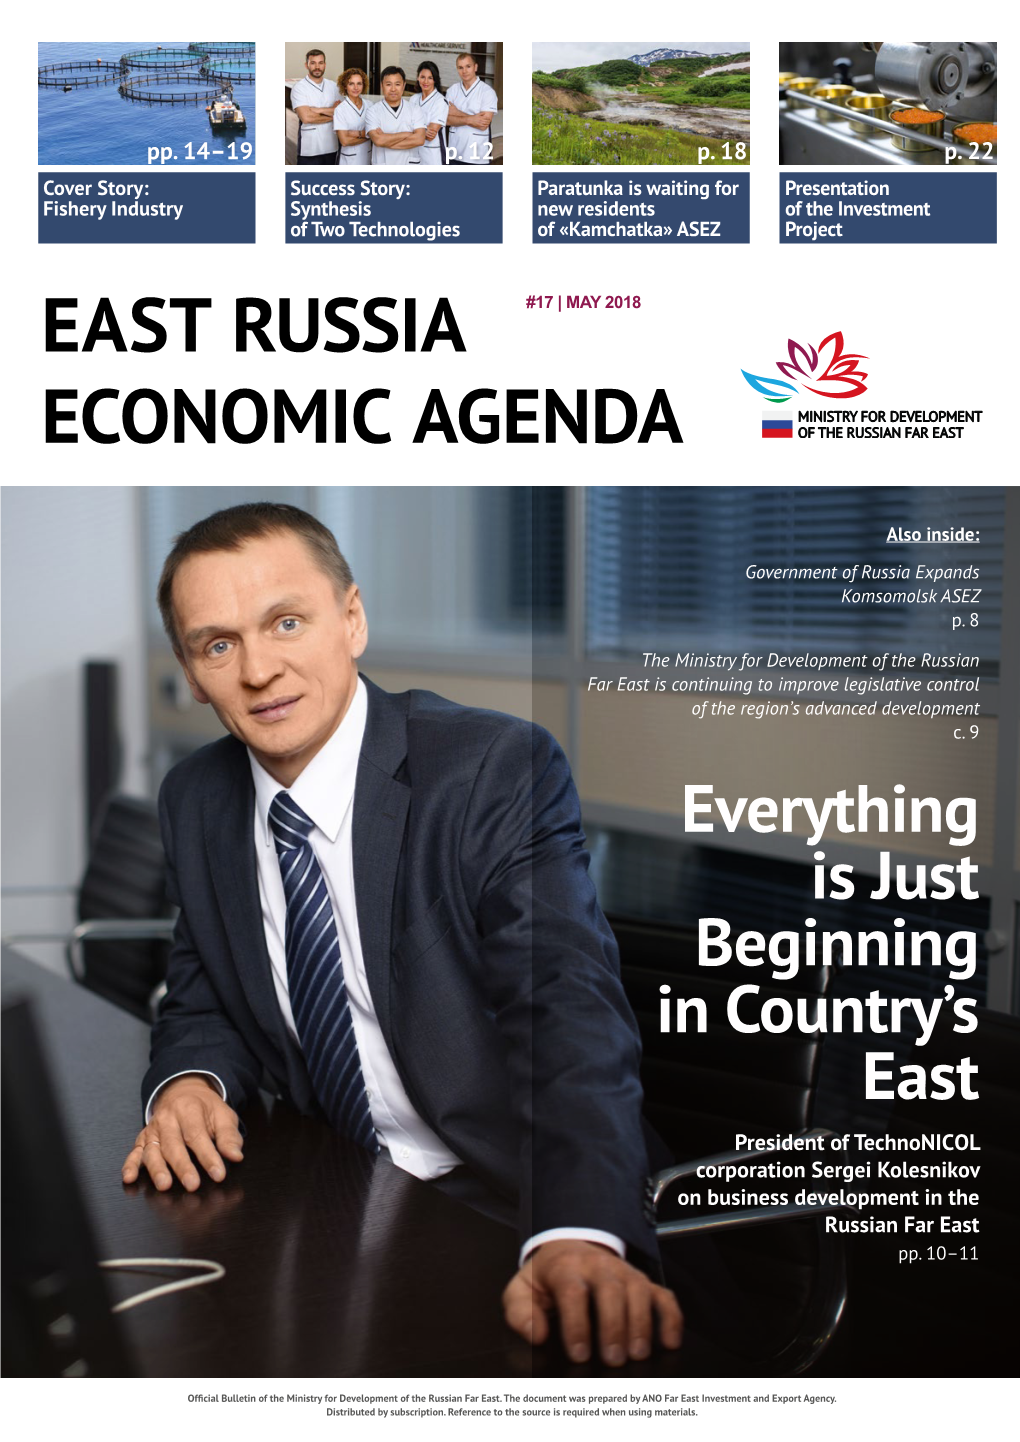 East Russia Economic Agenda